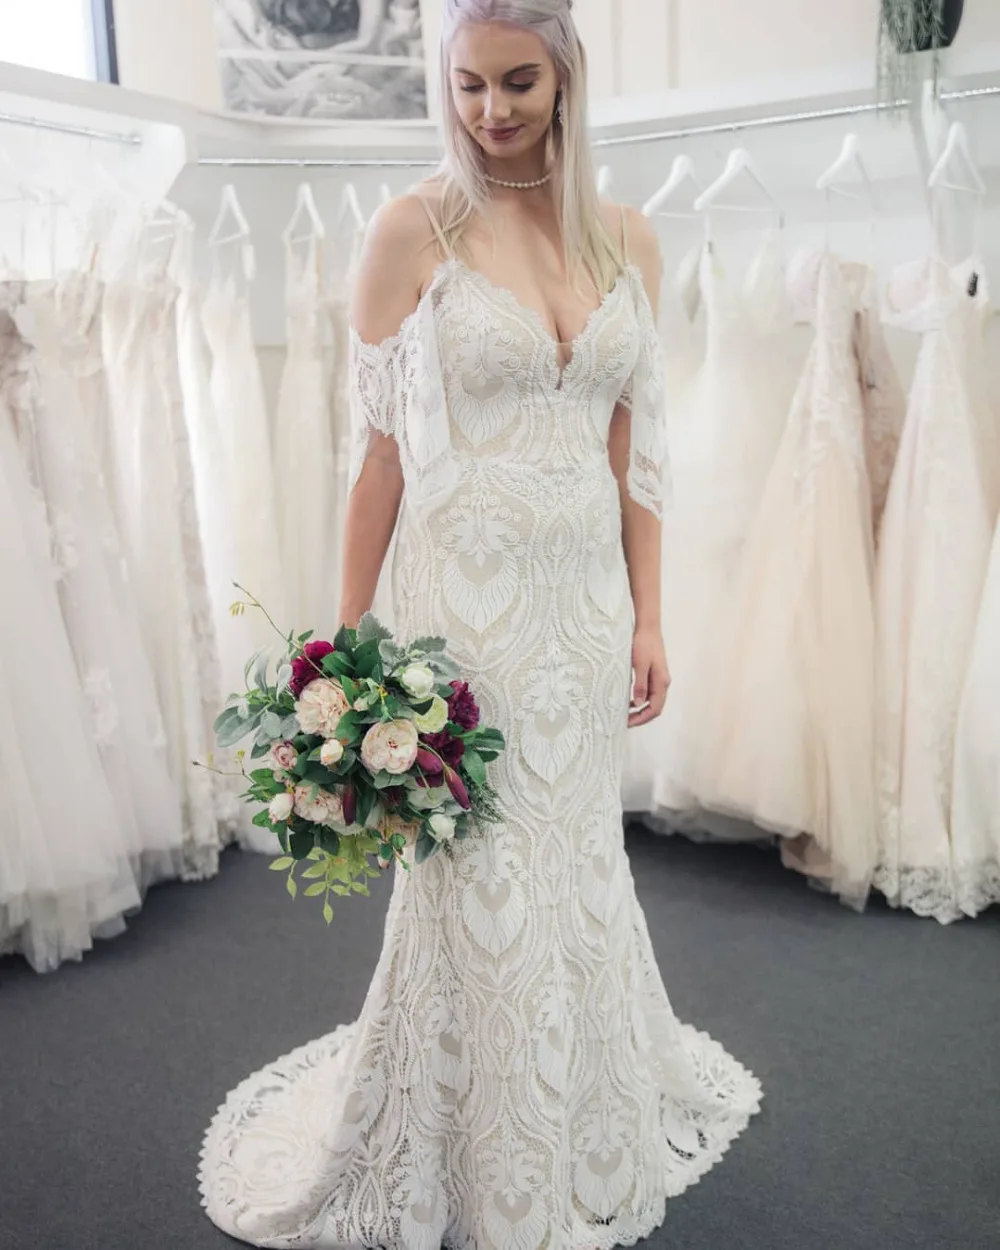 Eslieb bridal Dresses boho wedding dress 2019 Vestido de Noiva custom made wedding dresses